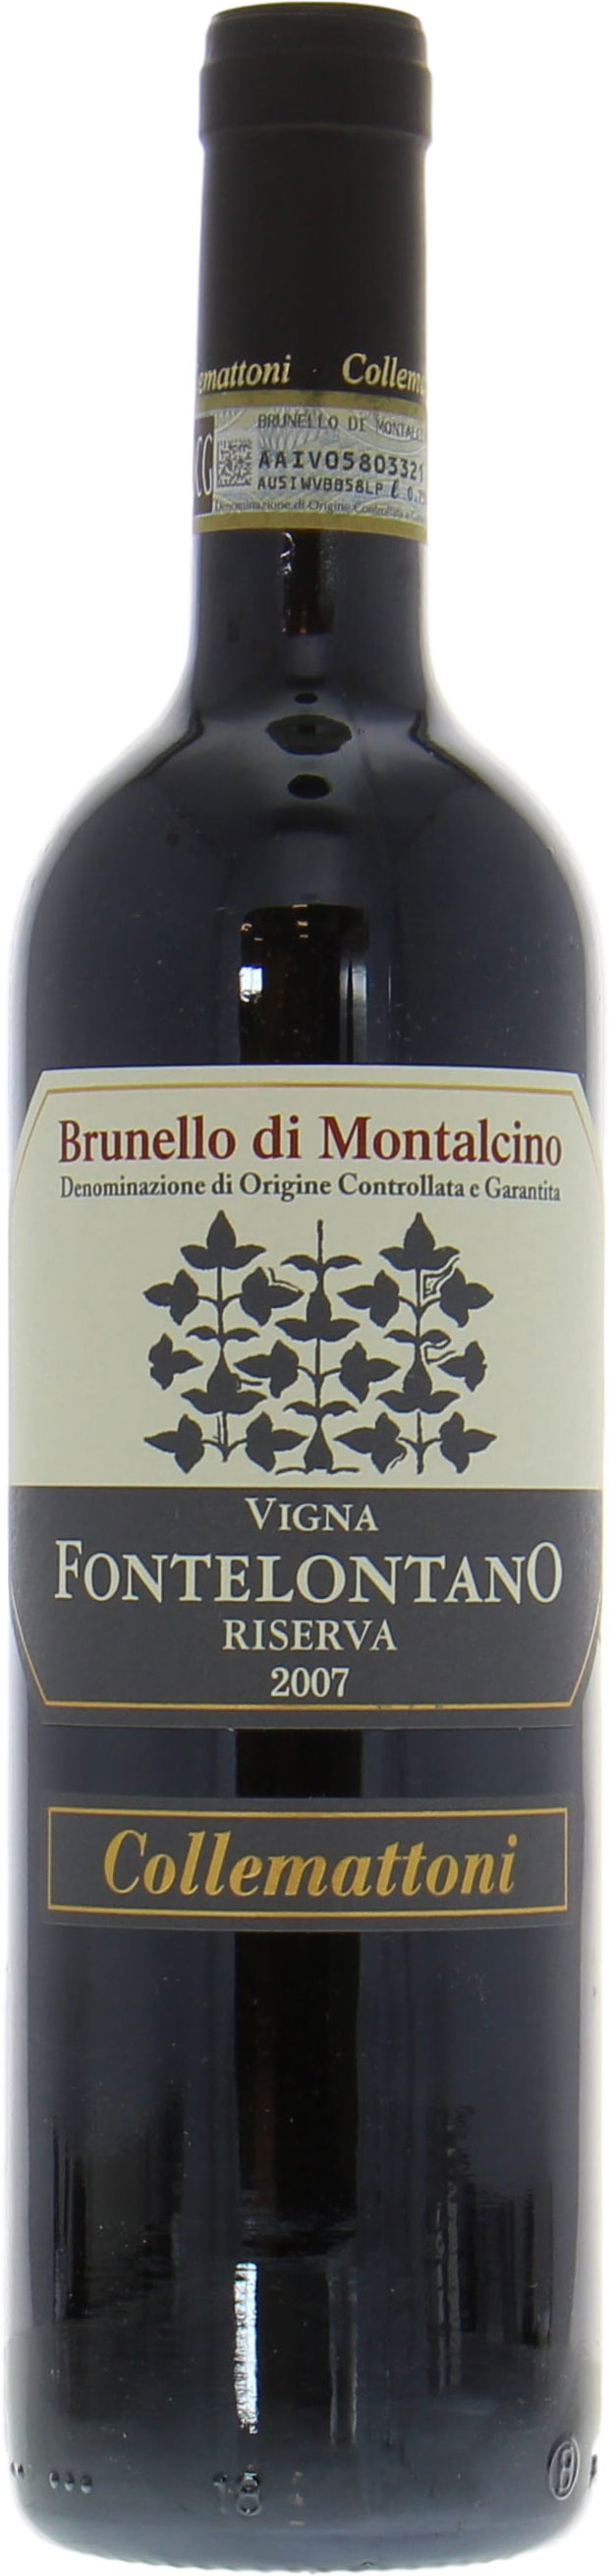 Collemattoni  - Brunello di Montalcino Riserva Vigna Fontelontano 2007 Perfect